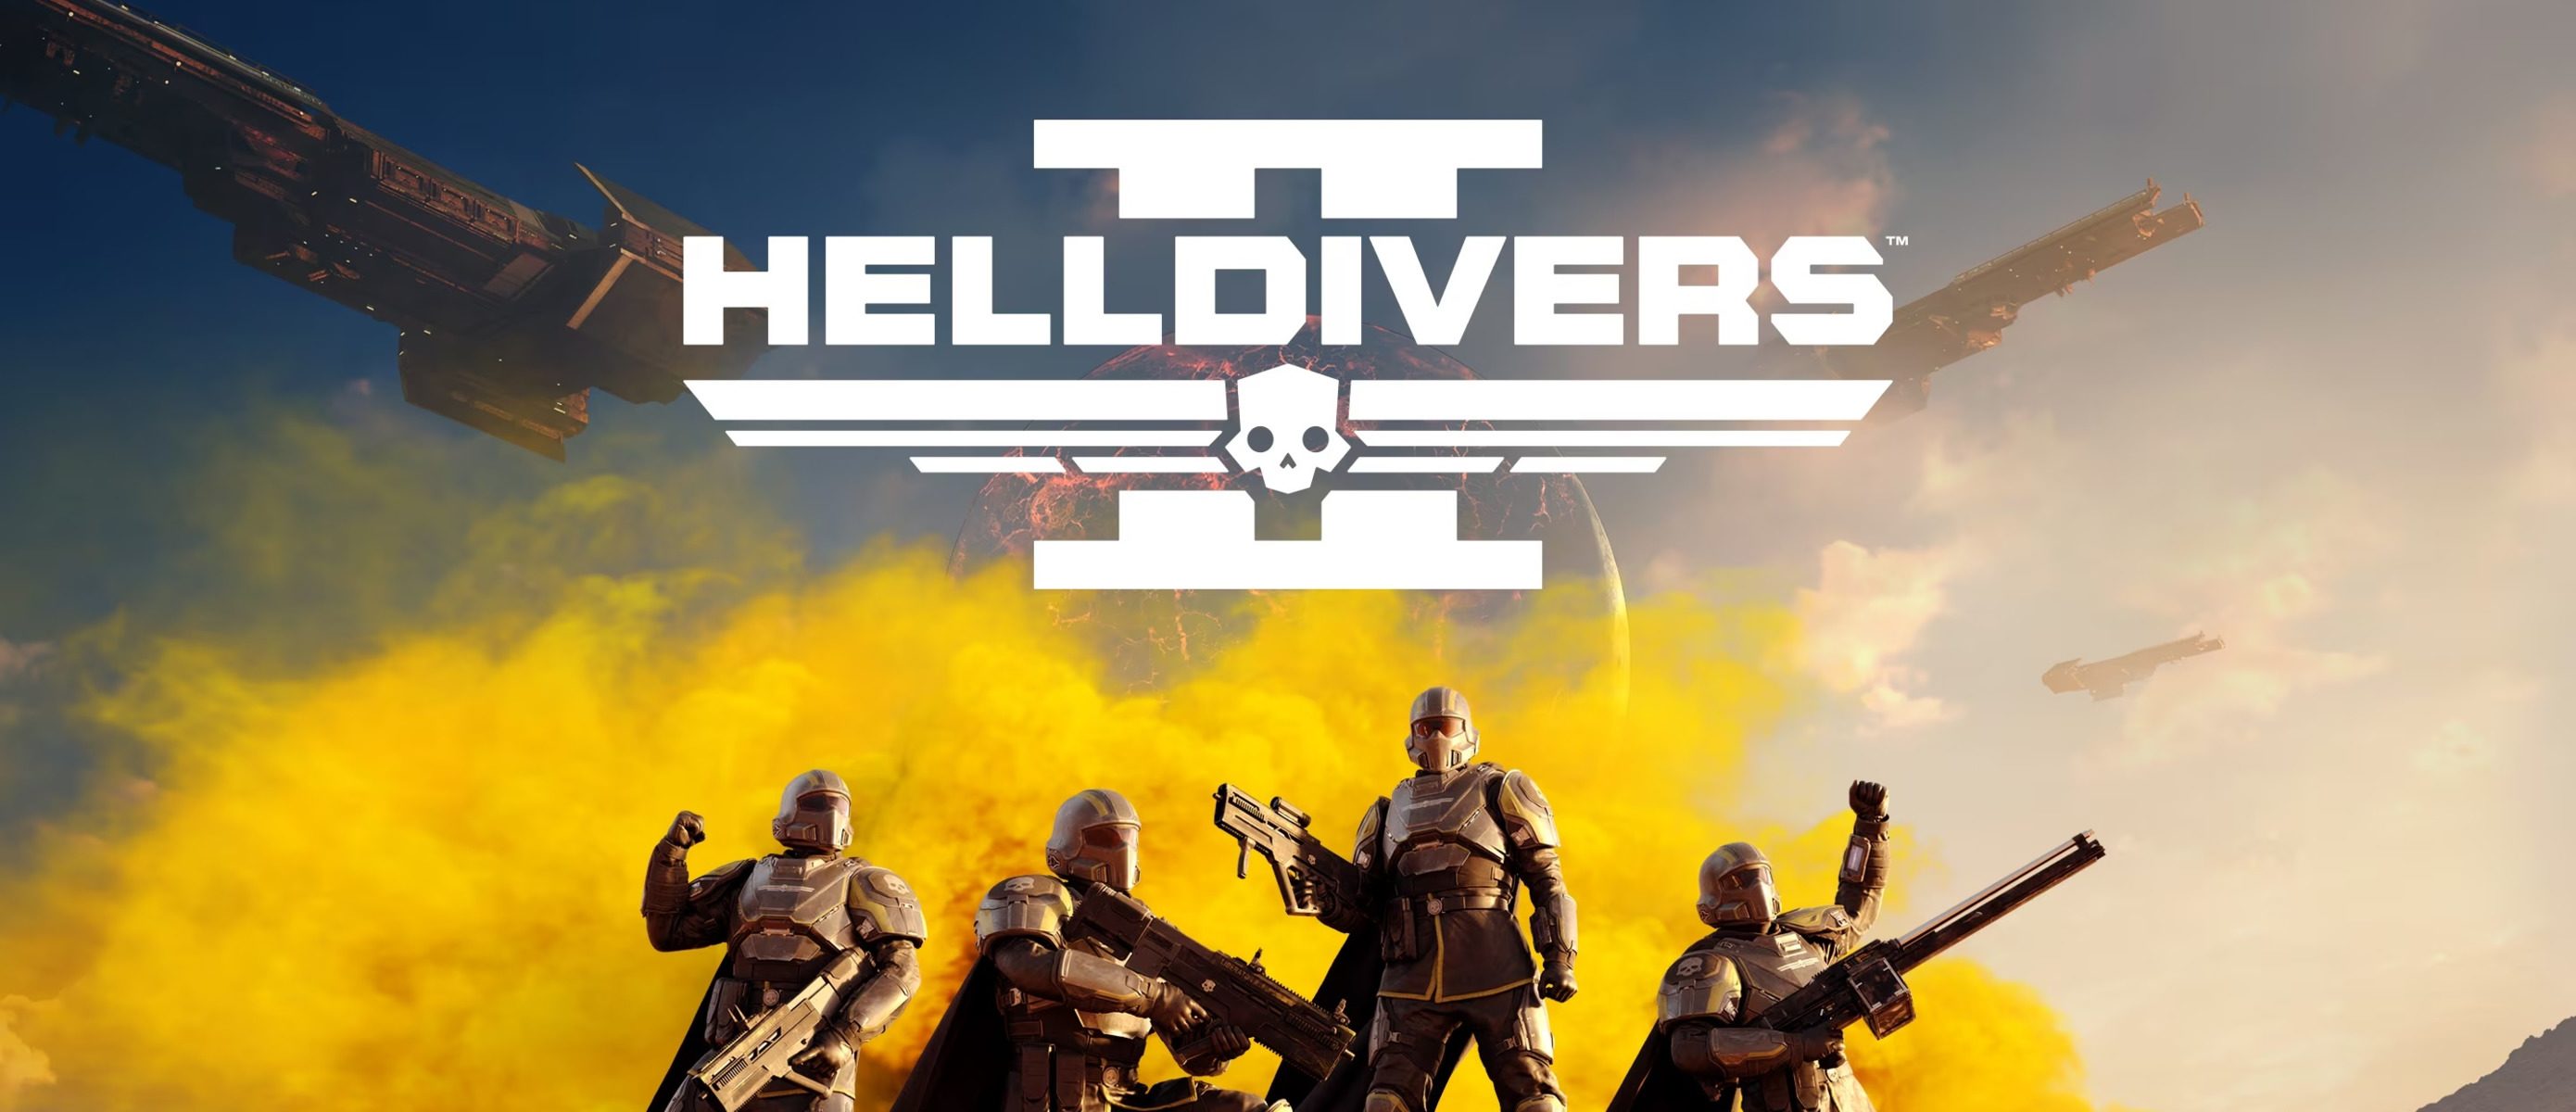 Helldivers перевод. Helldivers 2 трейлер. Helldivers 2 разработчики. Helldivers 2 логотип. Helldivers 2 обои.